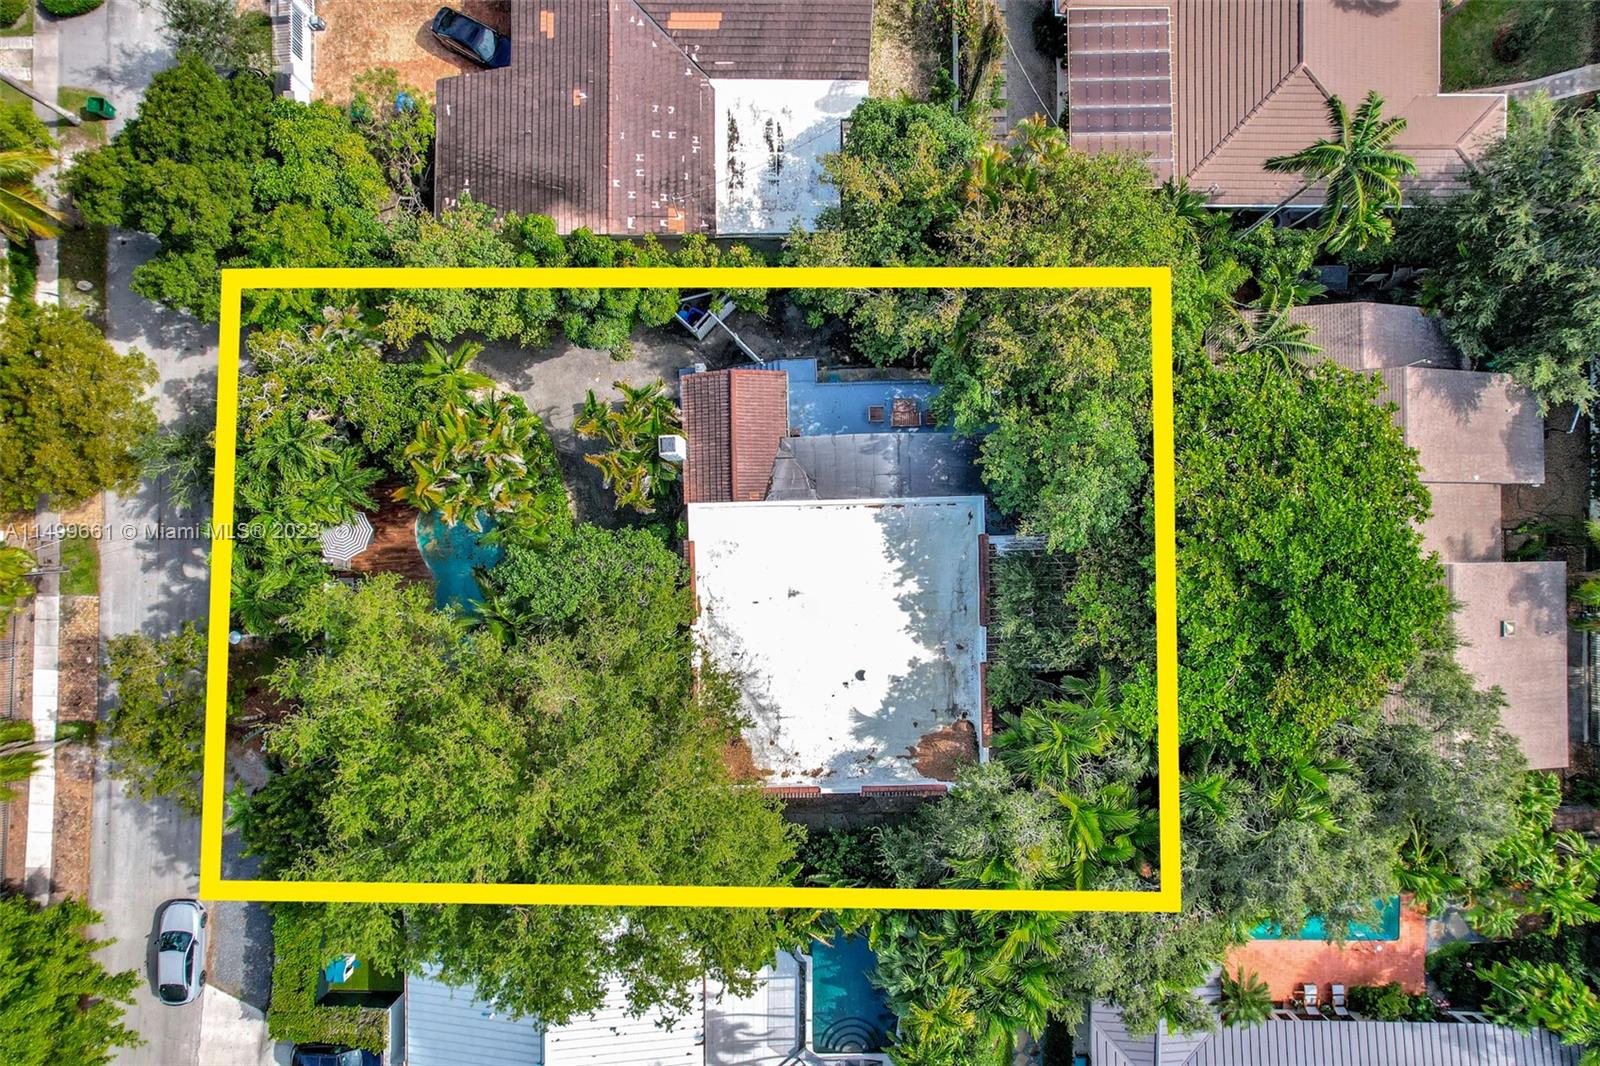 Rental Property at 1720 Wa Kee Na Dr, Miami, Broward County, Florida -  - $2,600,000 MO.